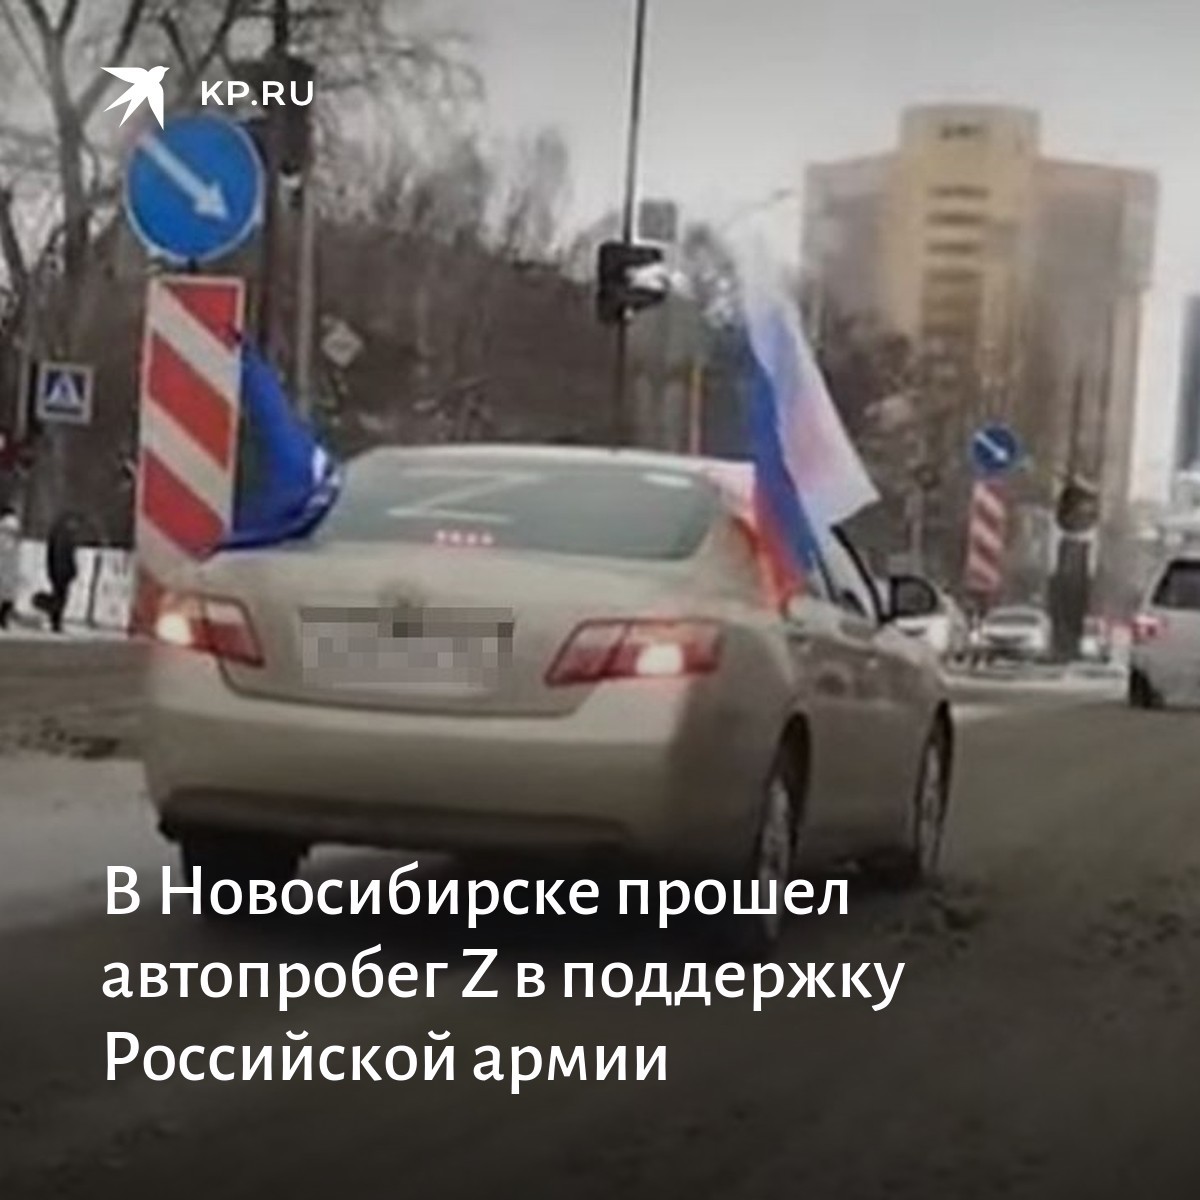 В международном автопробеге участвовало 350 машин. Z на автомобилях в России.